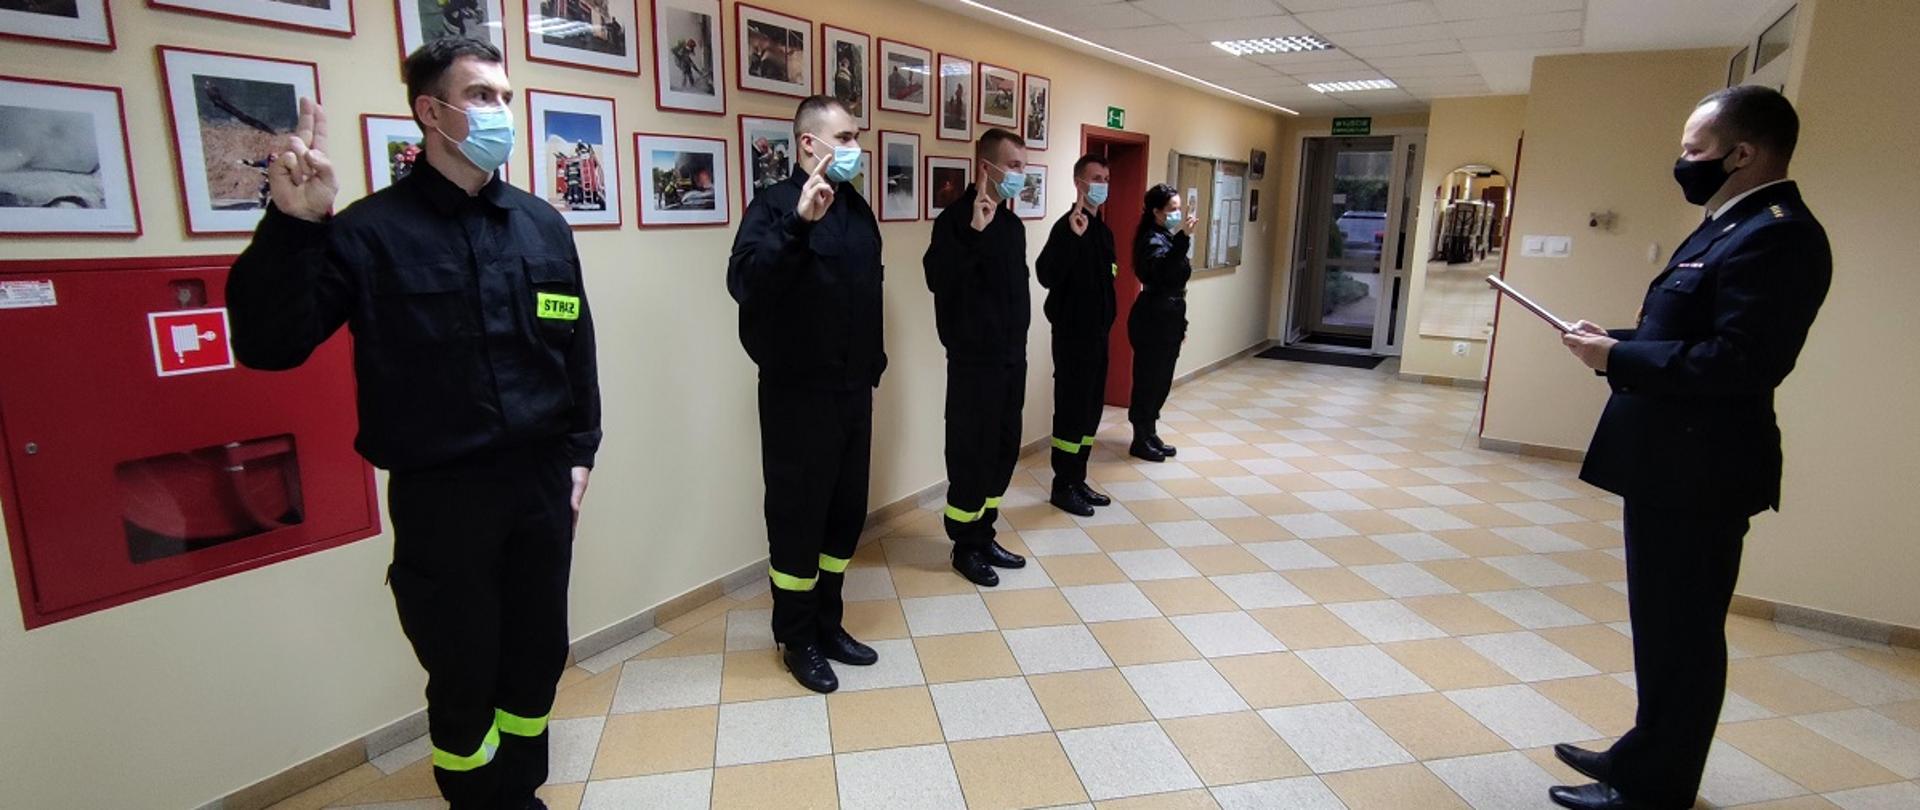 Pięciu strażaków z uniesioną prawą dłonią do ślubowania